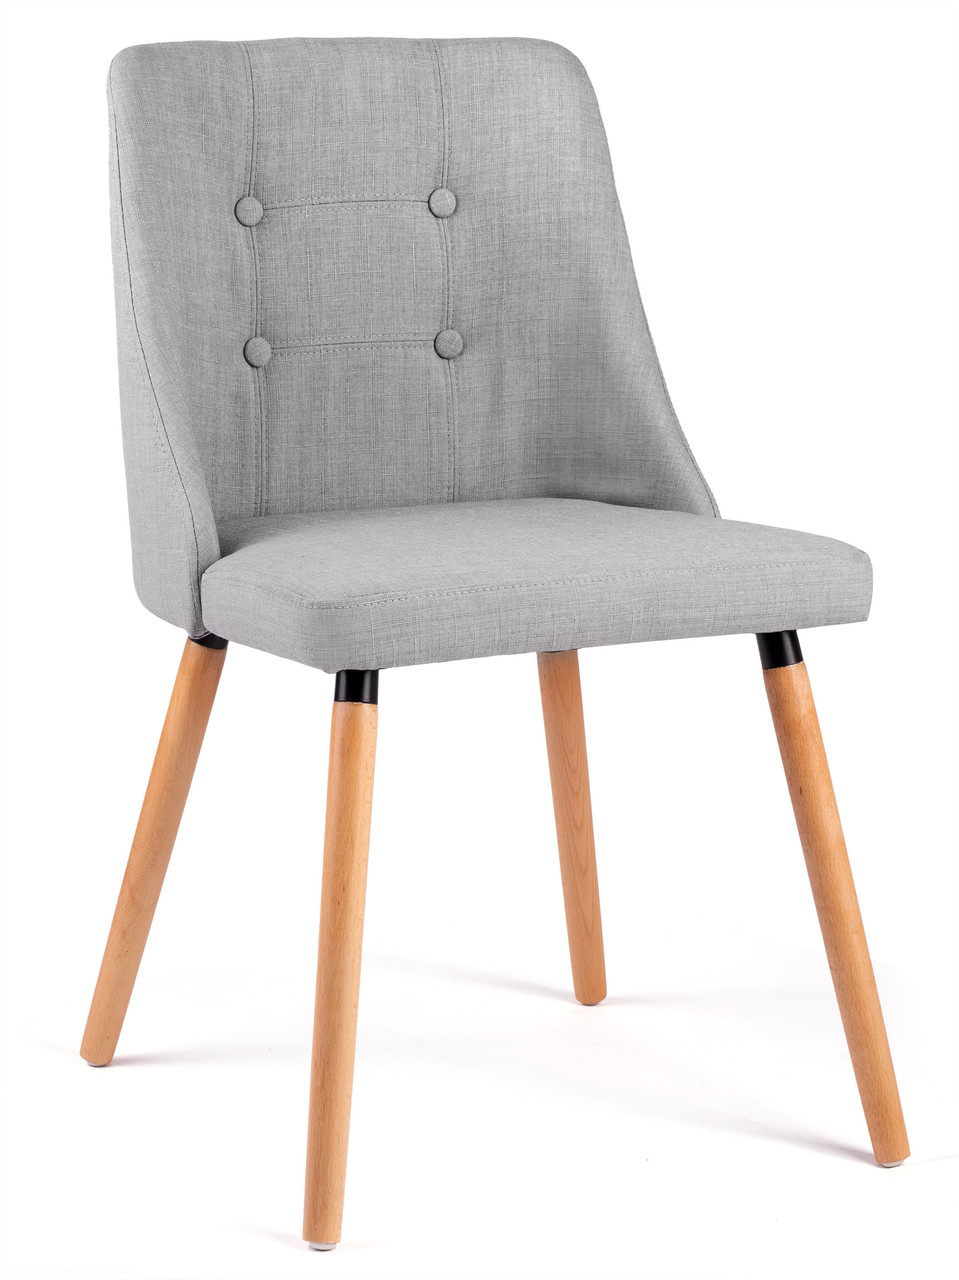 Кресло стул для кухни и бара Sofotel Quero серый (9178)